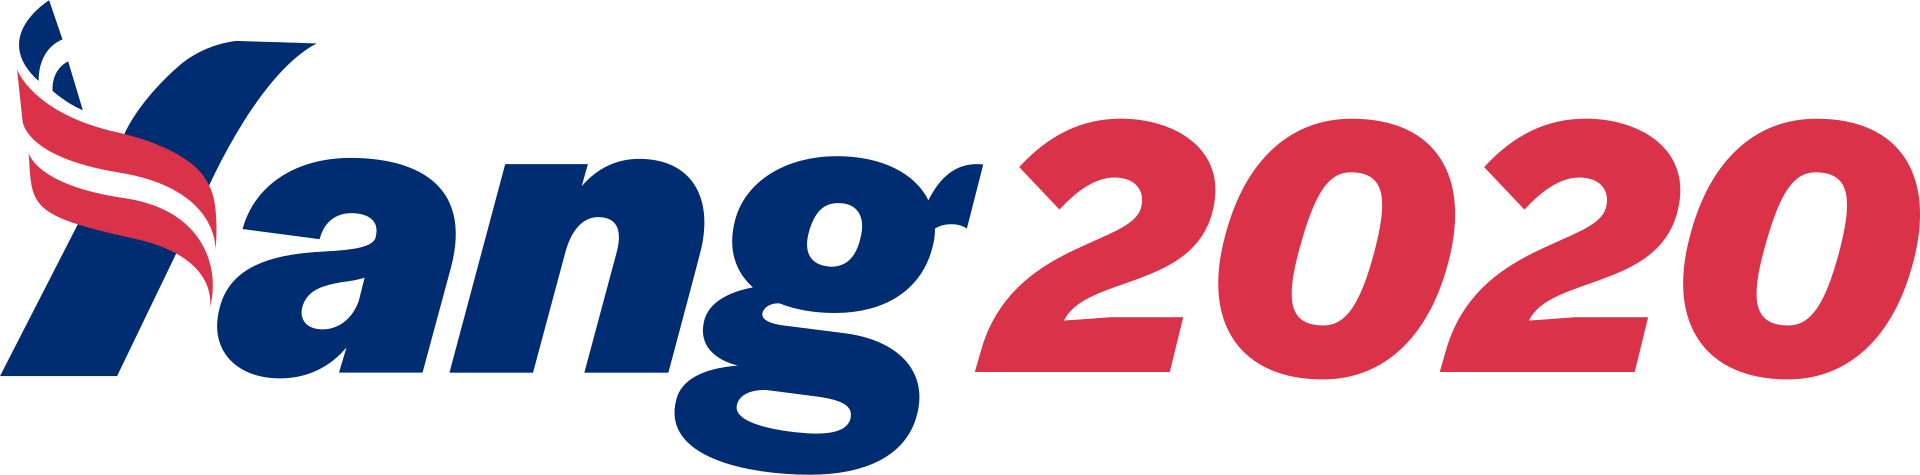 Yang campaign logo